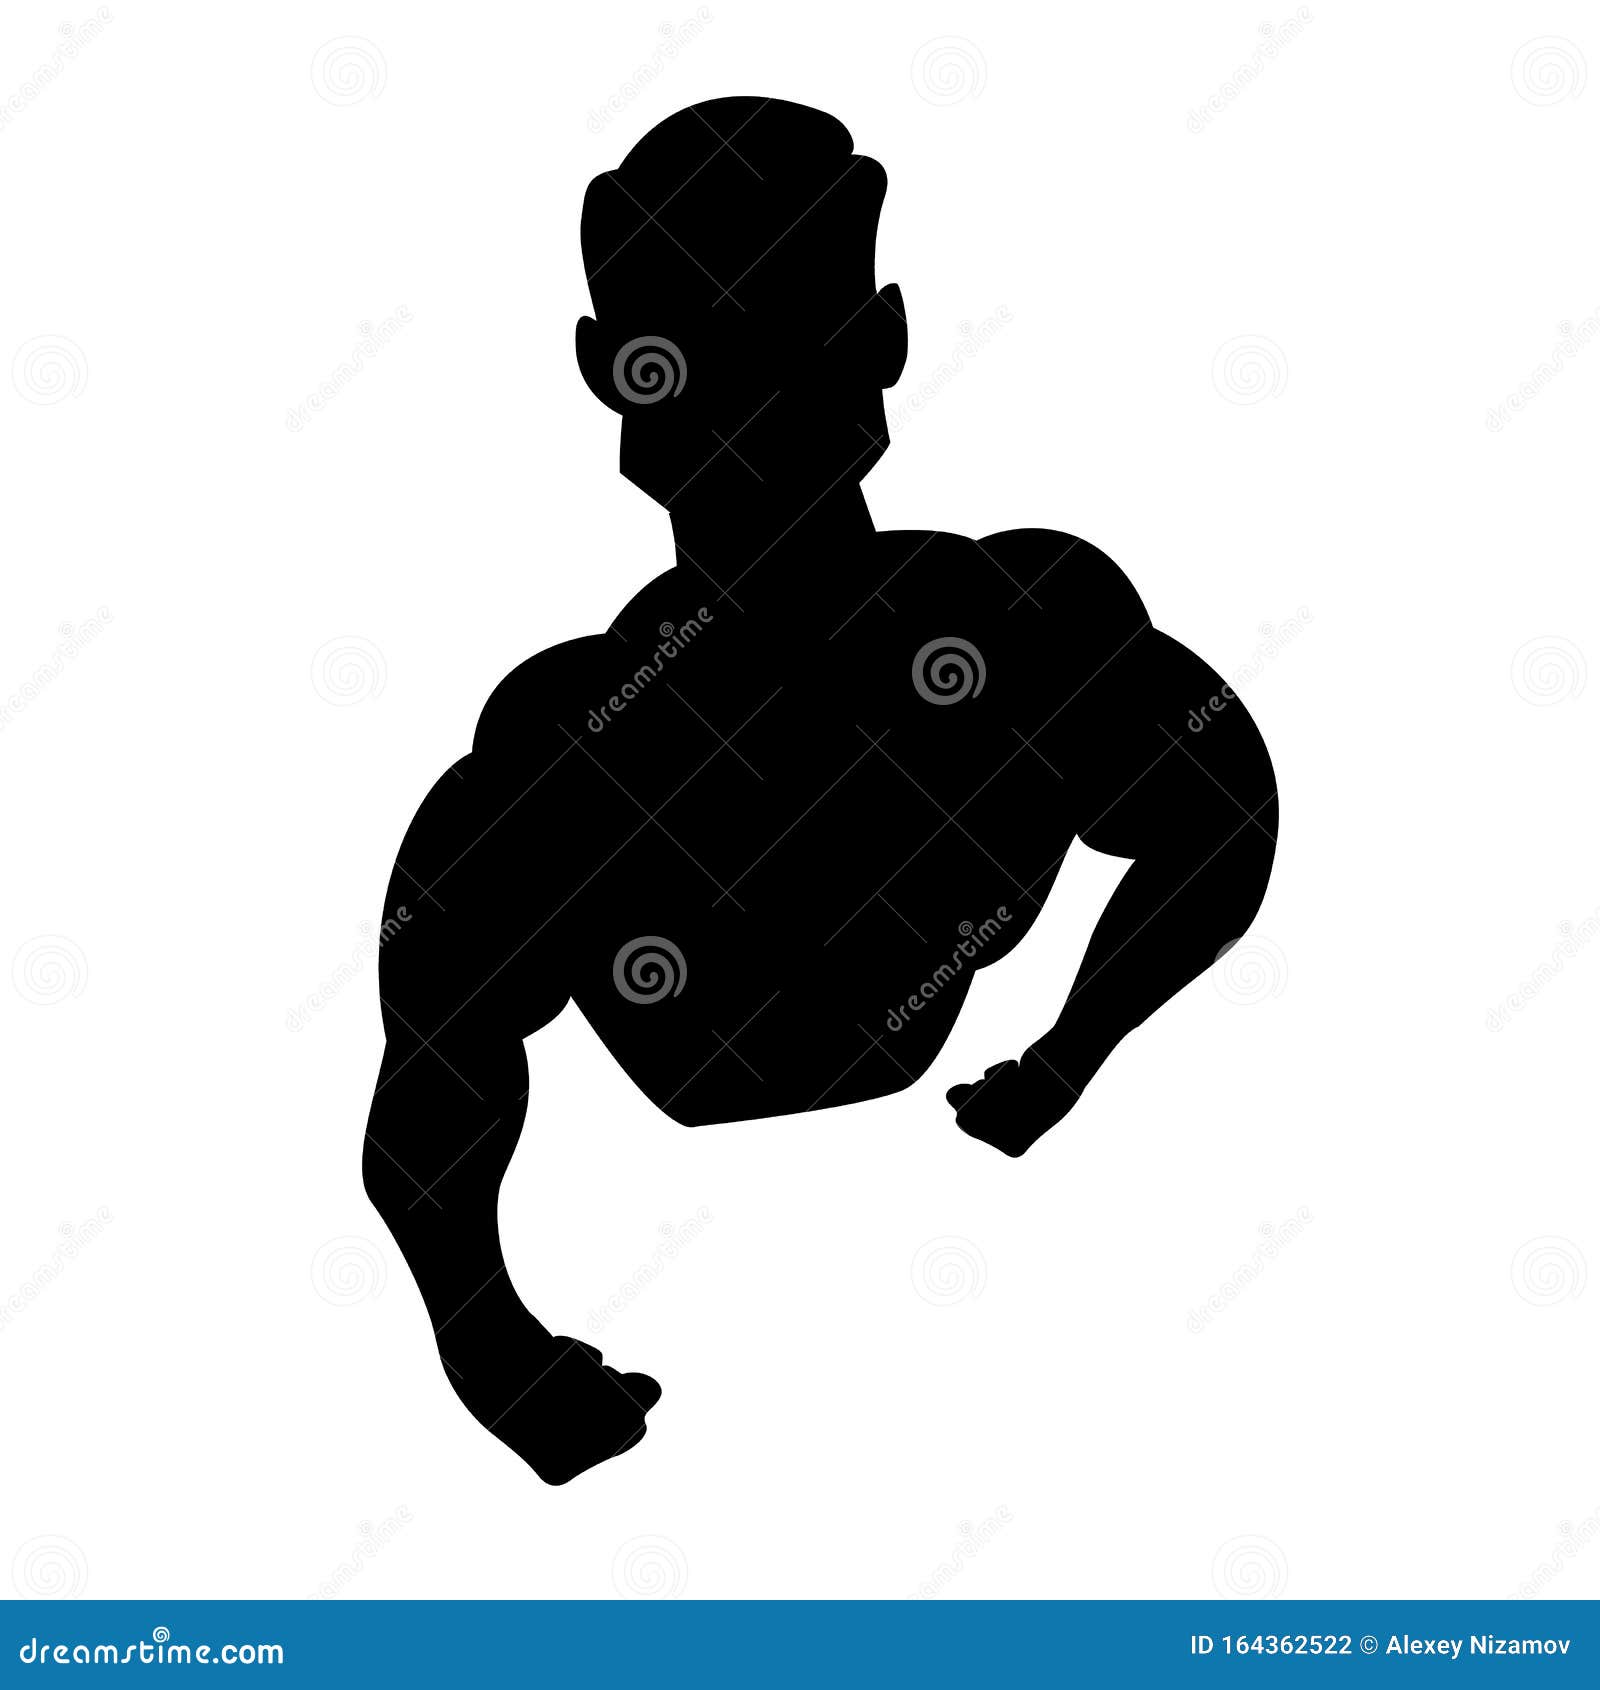 Bodyduilding Silhouette Vector. Illustration for Fitness Logo, Label ...